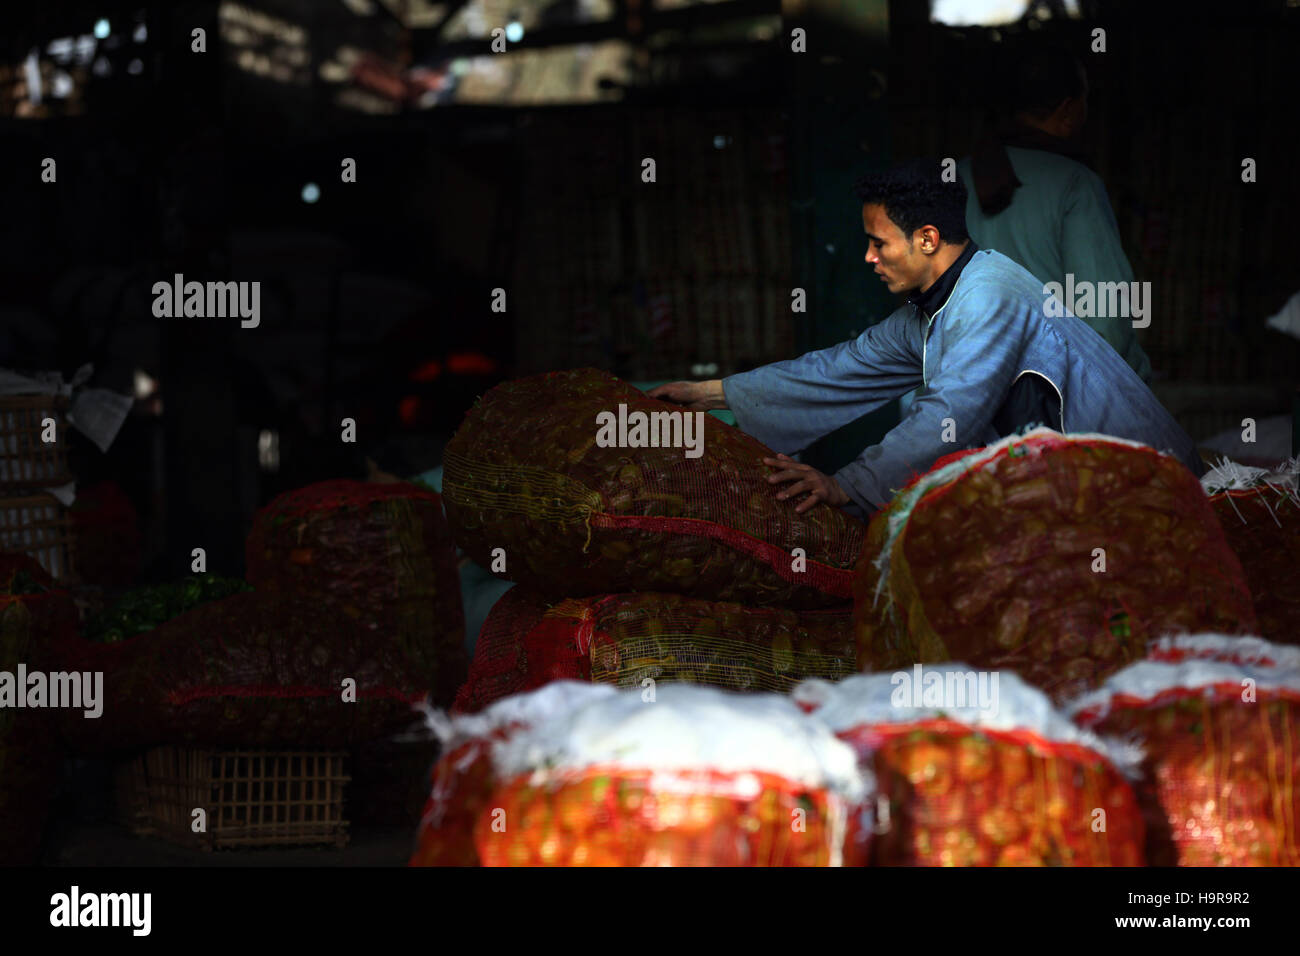 (161124) -- EL CAIRO, 24 de noviembre, 2016 (Xinhua) -- un proveedor organiza verduras en mercado Obour en El Cairo, capital de Egipto, el 19 de noviembre del 2016. Situado en las afueras al norte de El Cairo, Obour mayorista de frutas y hortalizas del mercado fue una vez el más transitado depot en Egipto, hasta que la recesión económica comenzó a golpear cada rincón de ella. (Xinhua/Ahmed Gomaa) Foto de stock